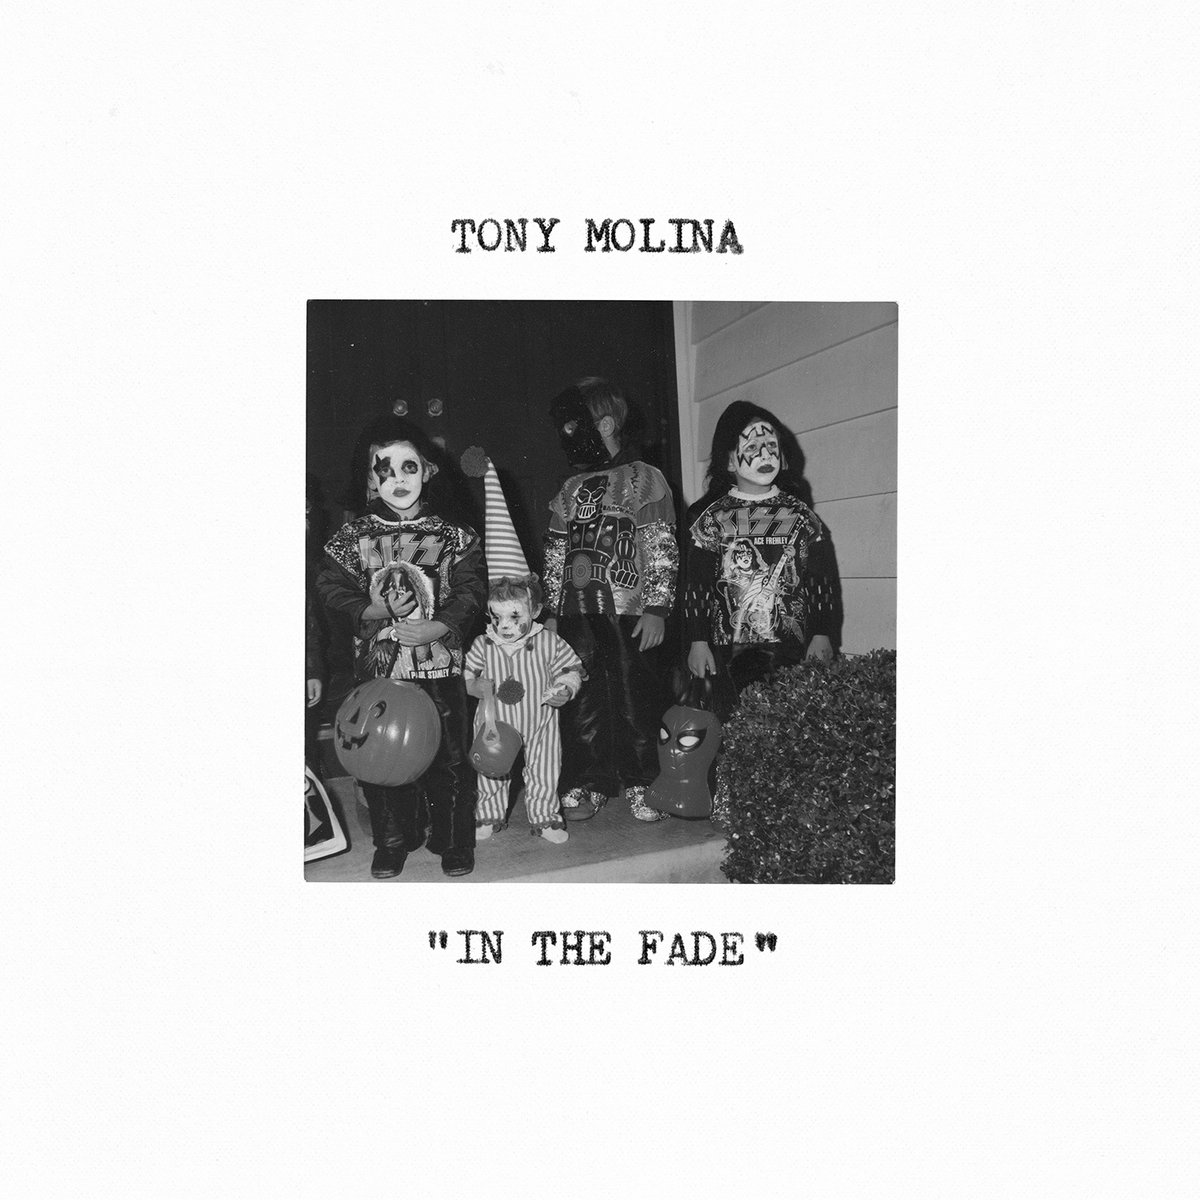 Tony Molina "In the fade" LP